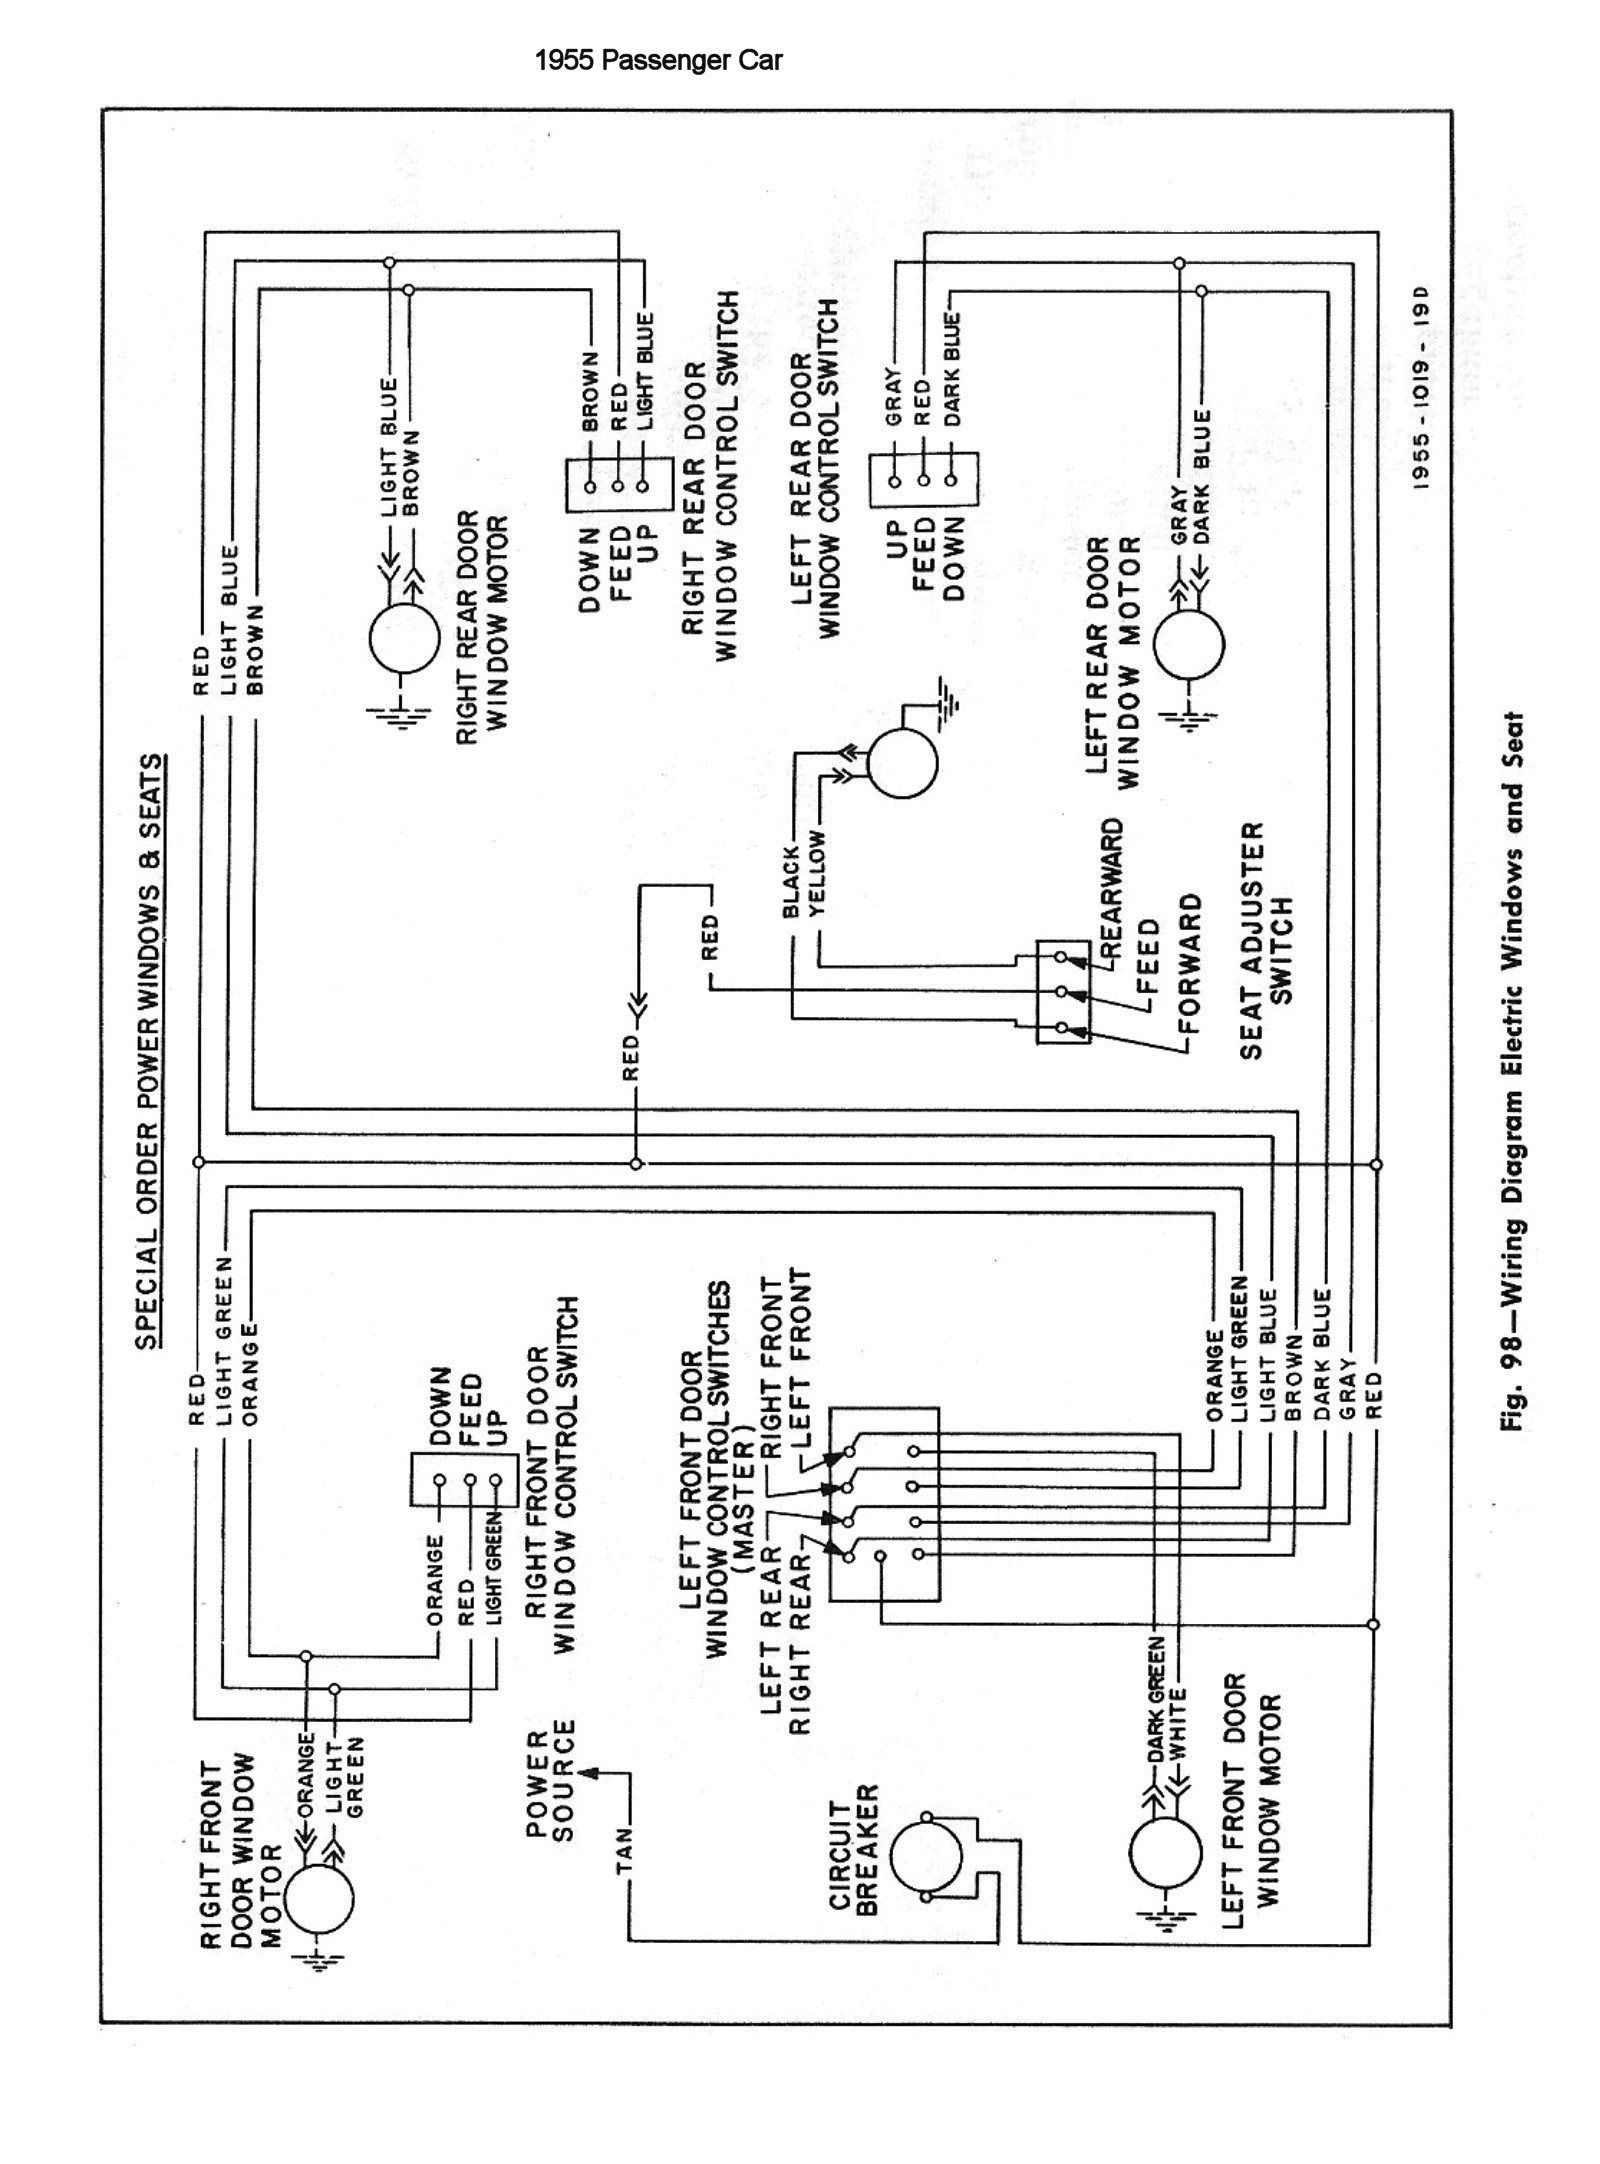 1955 Chevy Turn Signal Wiring Diagram | Wiringdiagram - Turn Signal Wiring Diagram